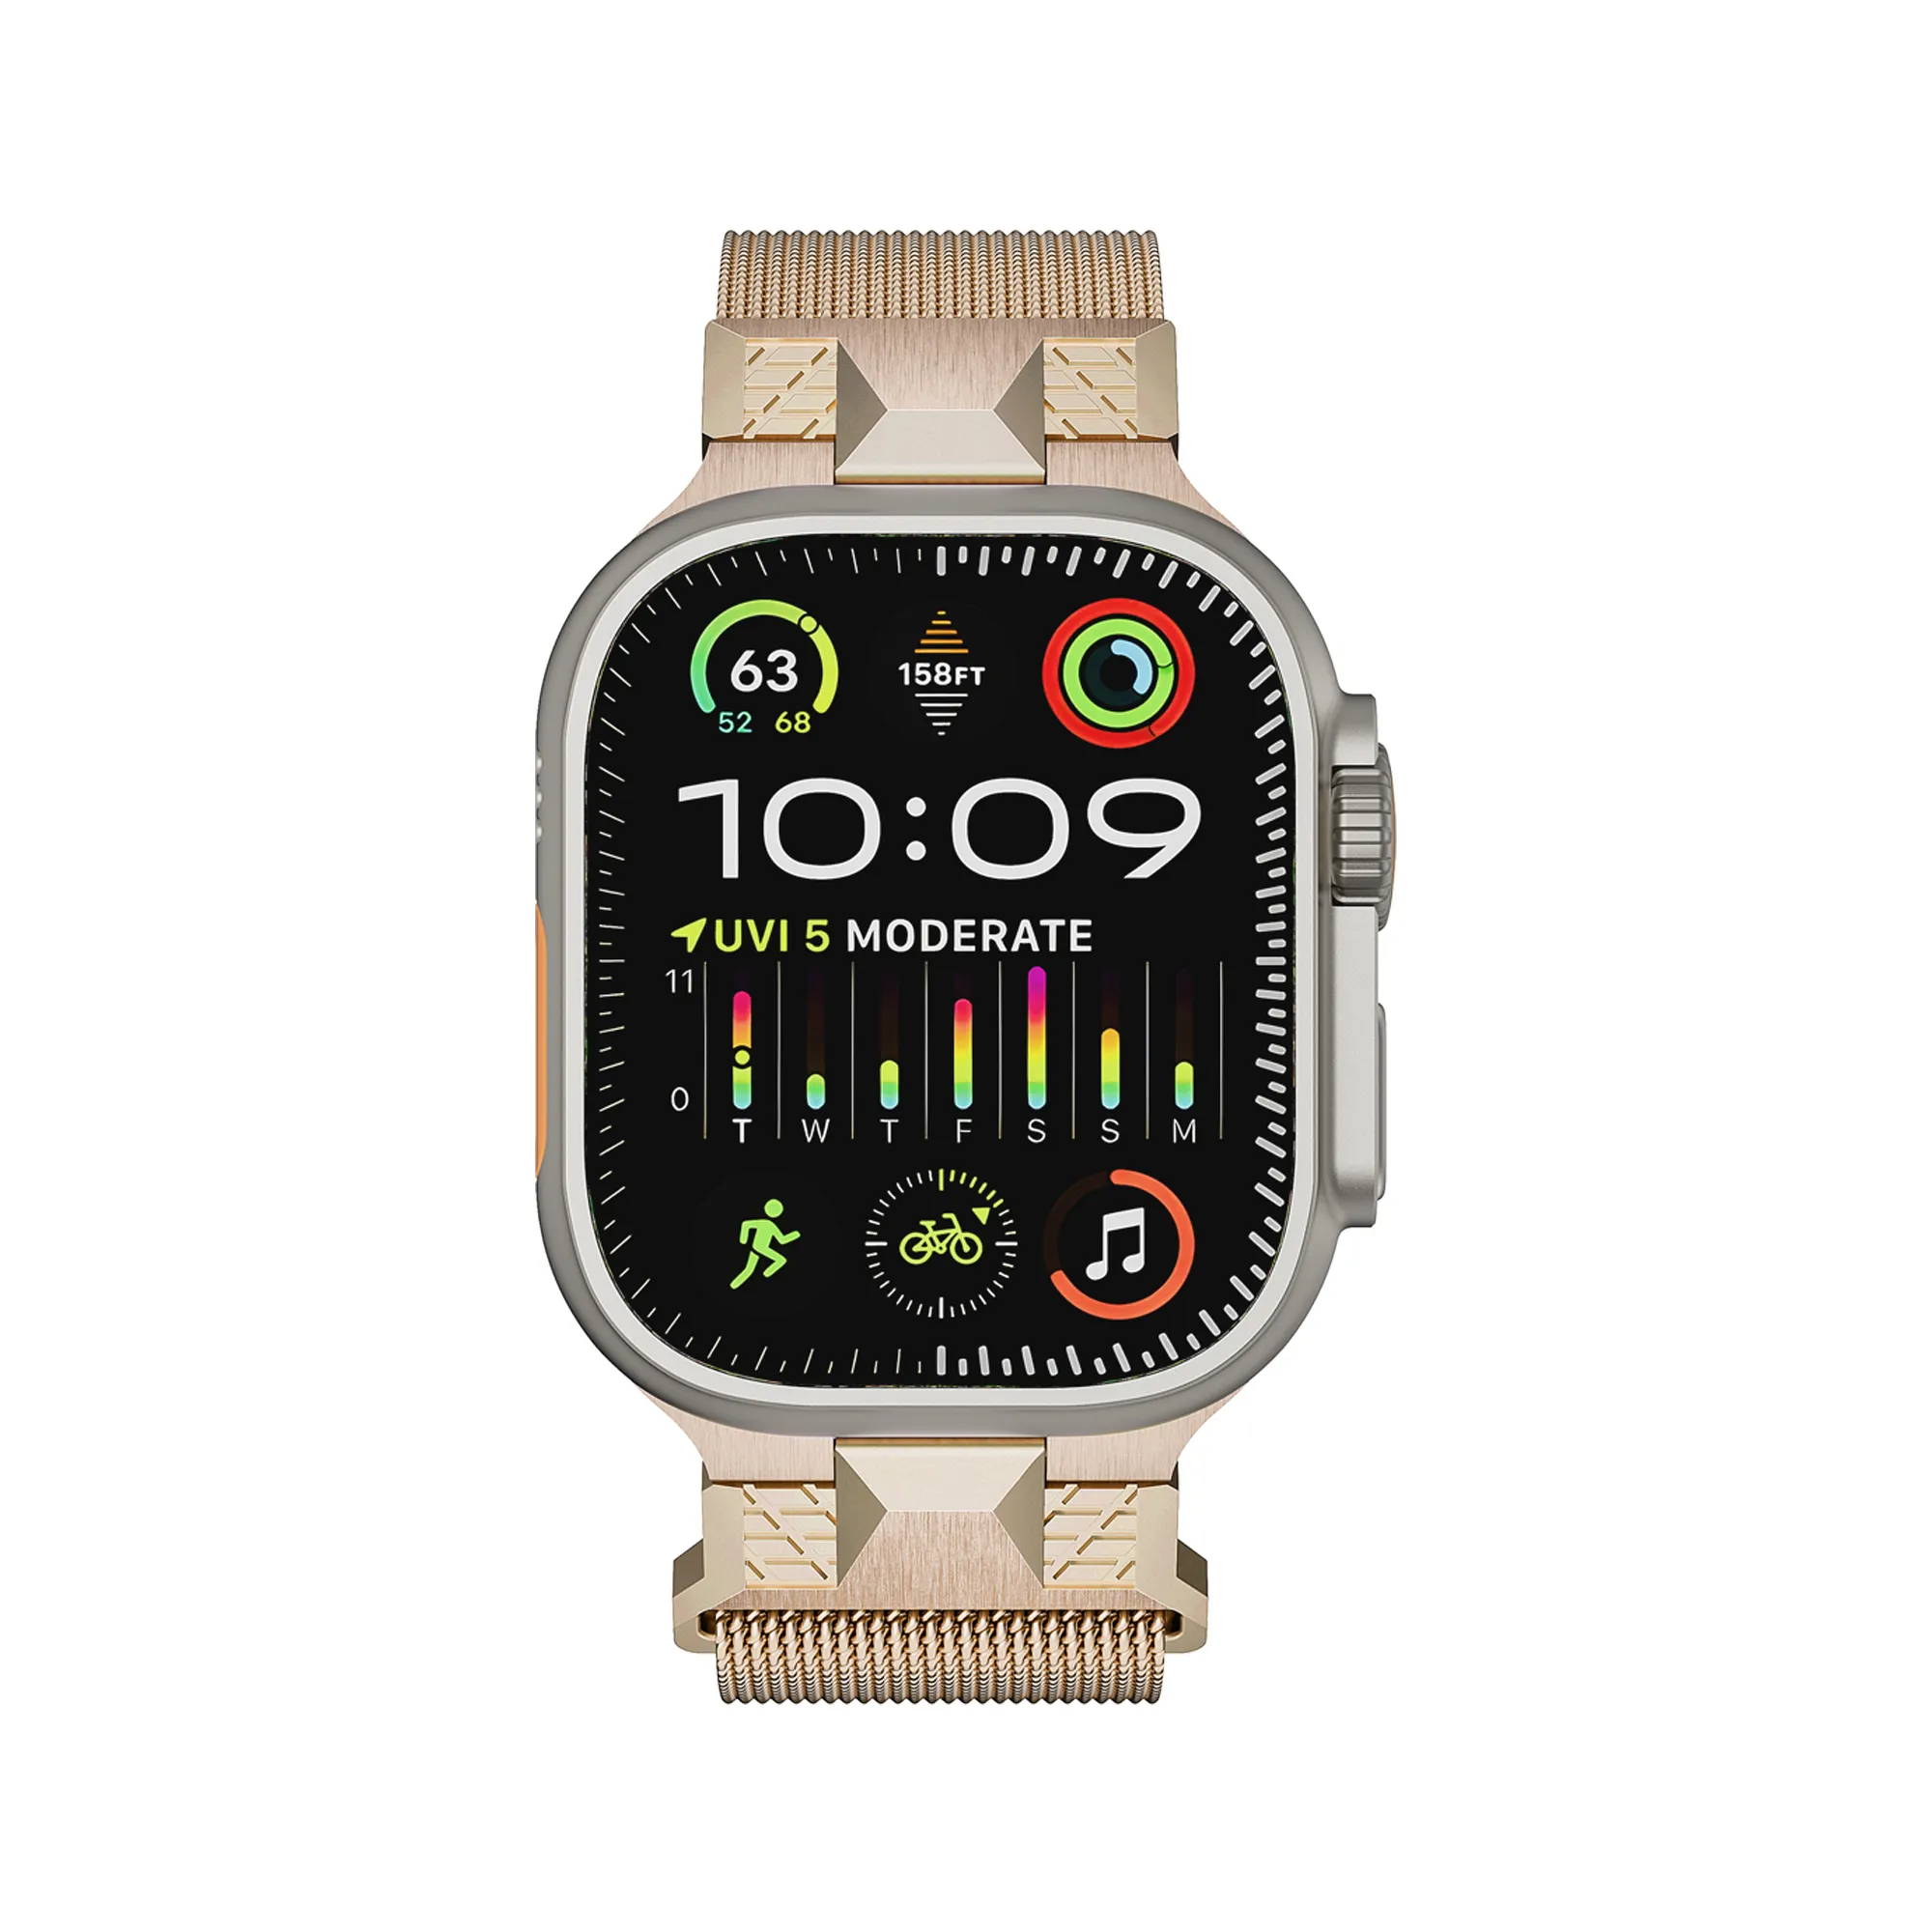 Apple Watch Correa용 럭셔리 밀라노 시계 스트랩 스테인레스 스틸 메쉬 밀라노 루프, 스테인레스 스틸 메탈 스트랩 밴드